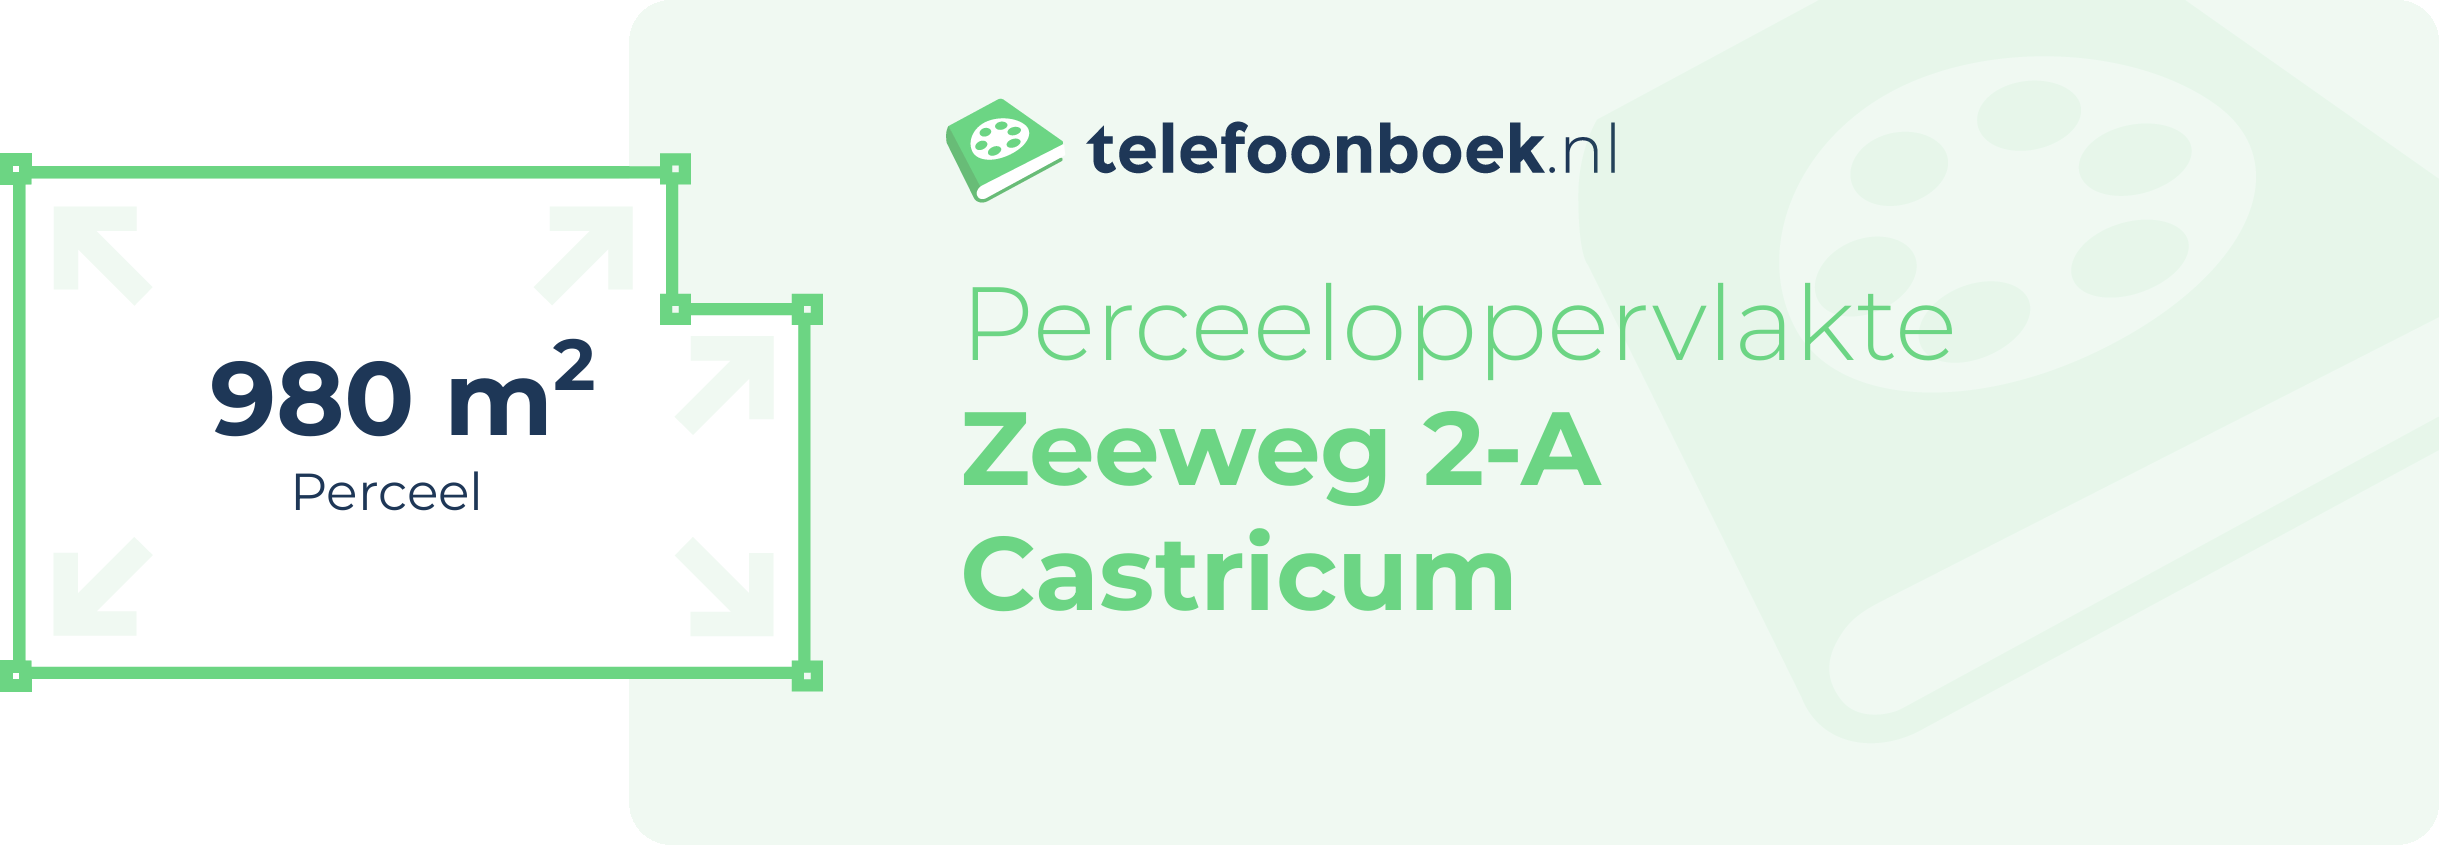 Perceeloppervlakte Zeeweg 2-A Castricum